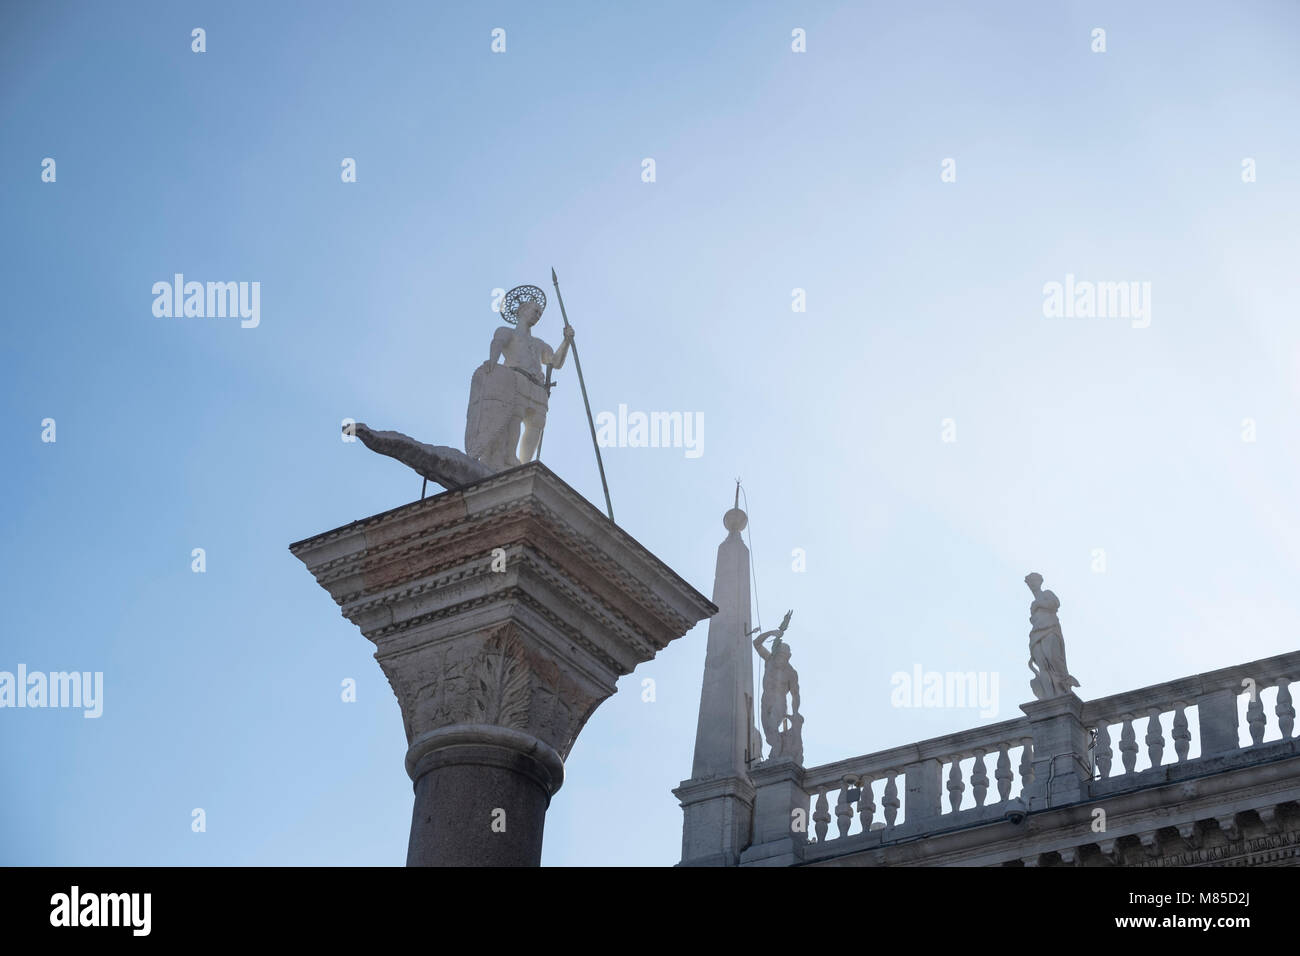 Venezia, Italia: Colonna a piazza San Marco e il Palazzo Ducale, parzialmente avvolto nella nebbia. Marzo 2018 Foto Stock